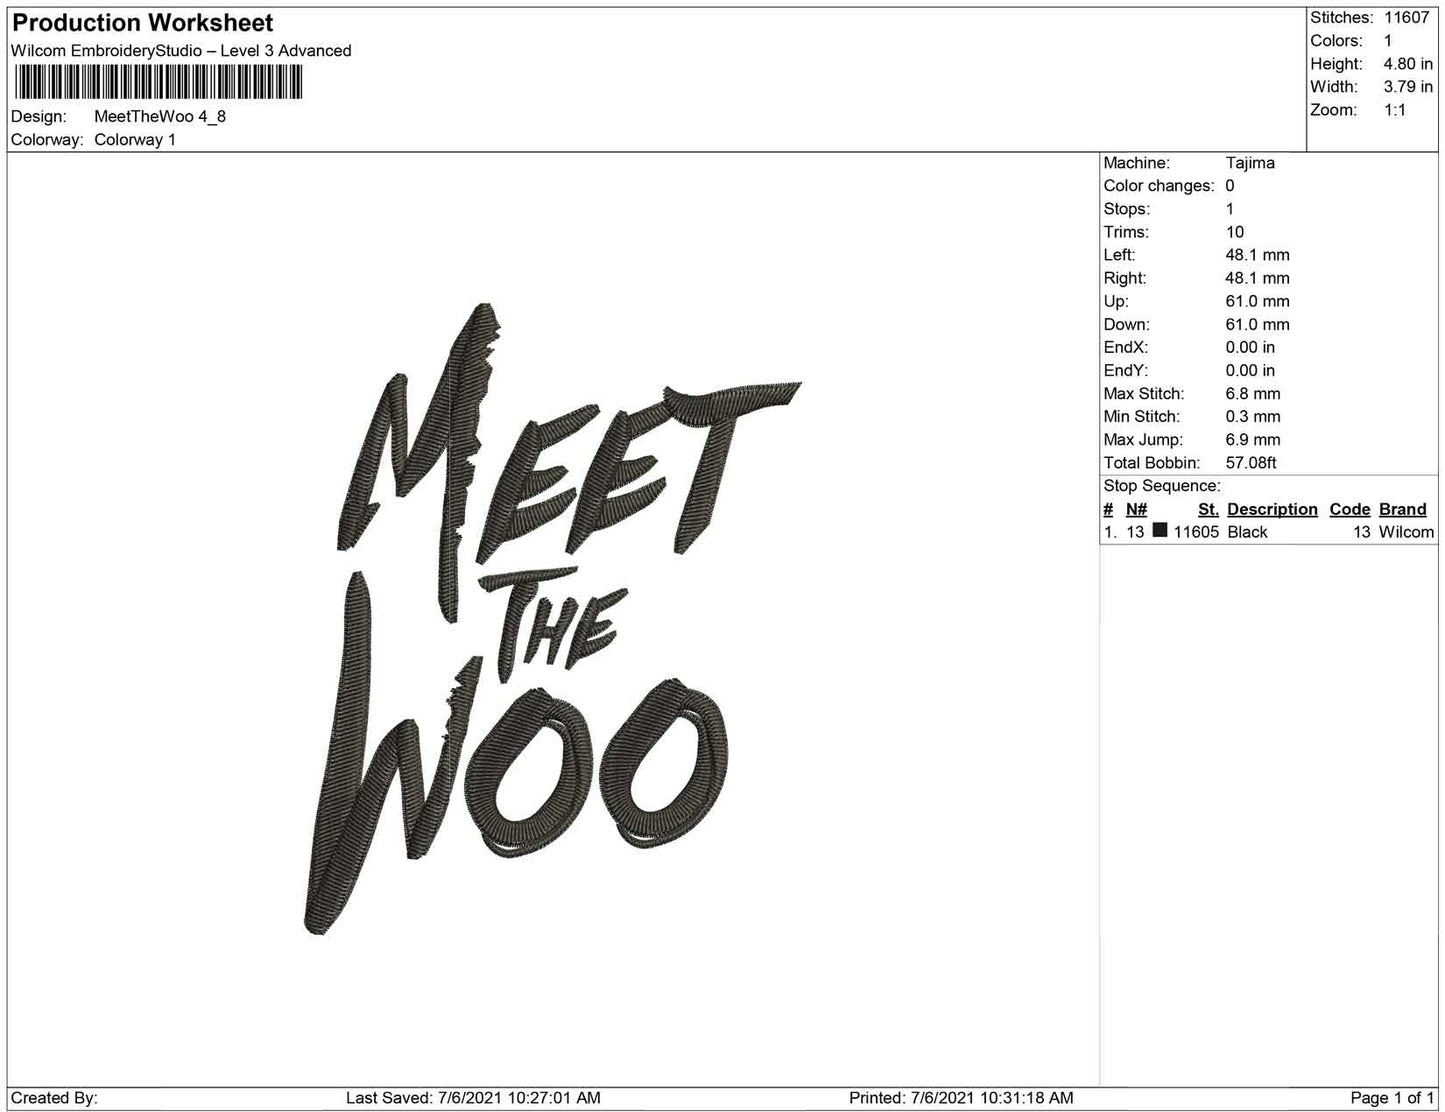 Meet the Woo